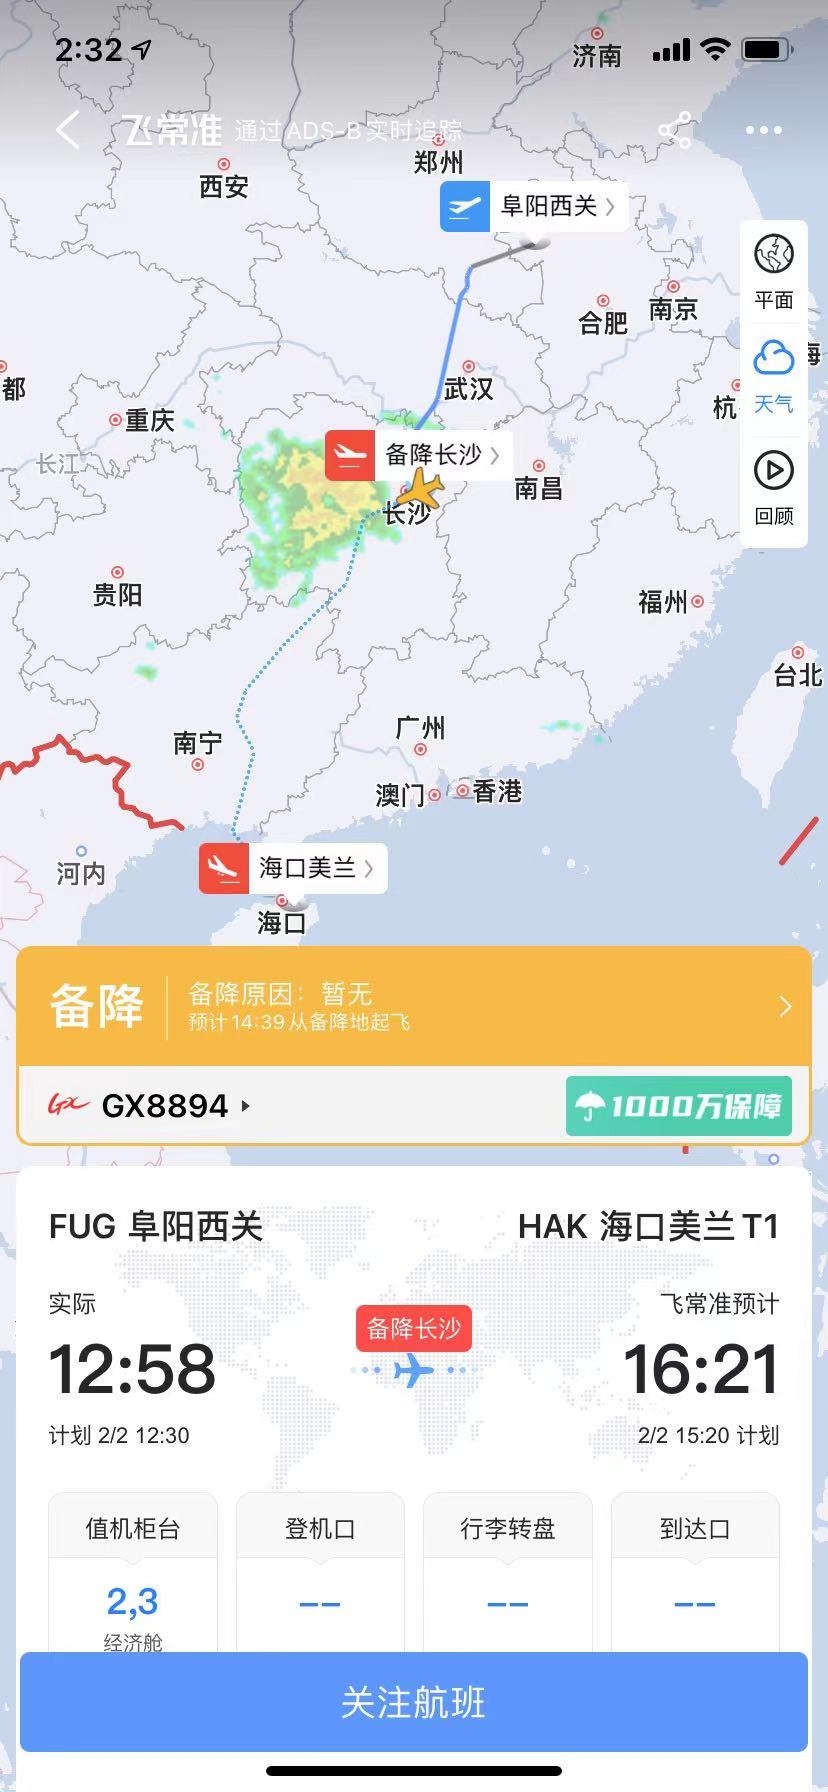 广西北部湾航空阜阳飞海口GX8894航班于14:09紧急备降长沙黄花机场








